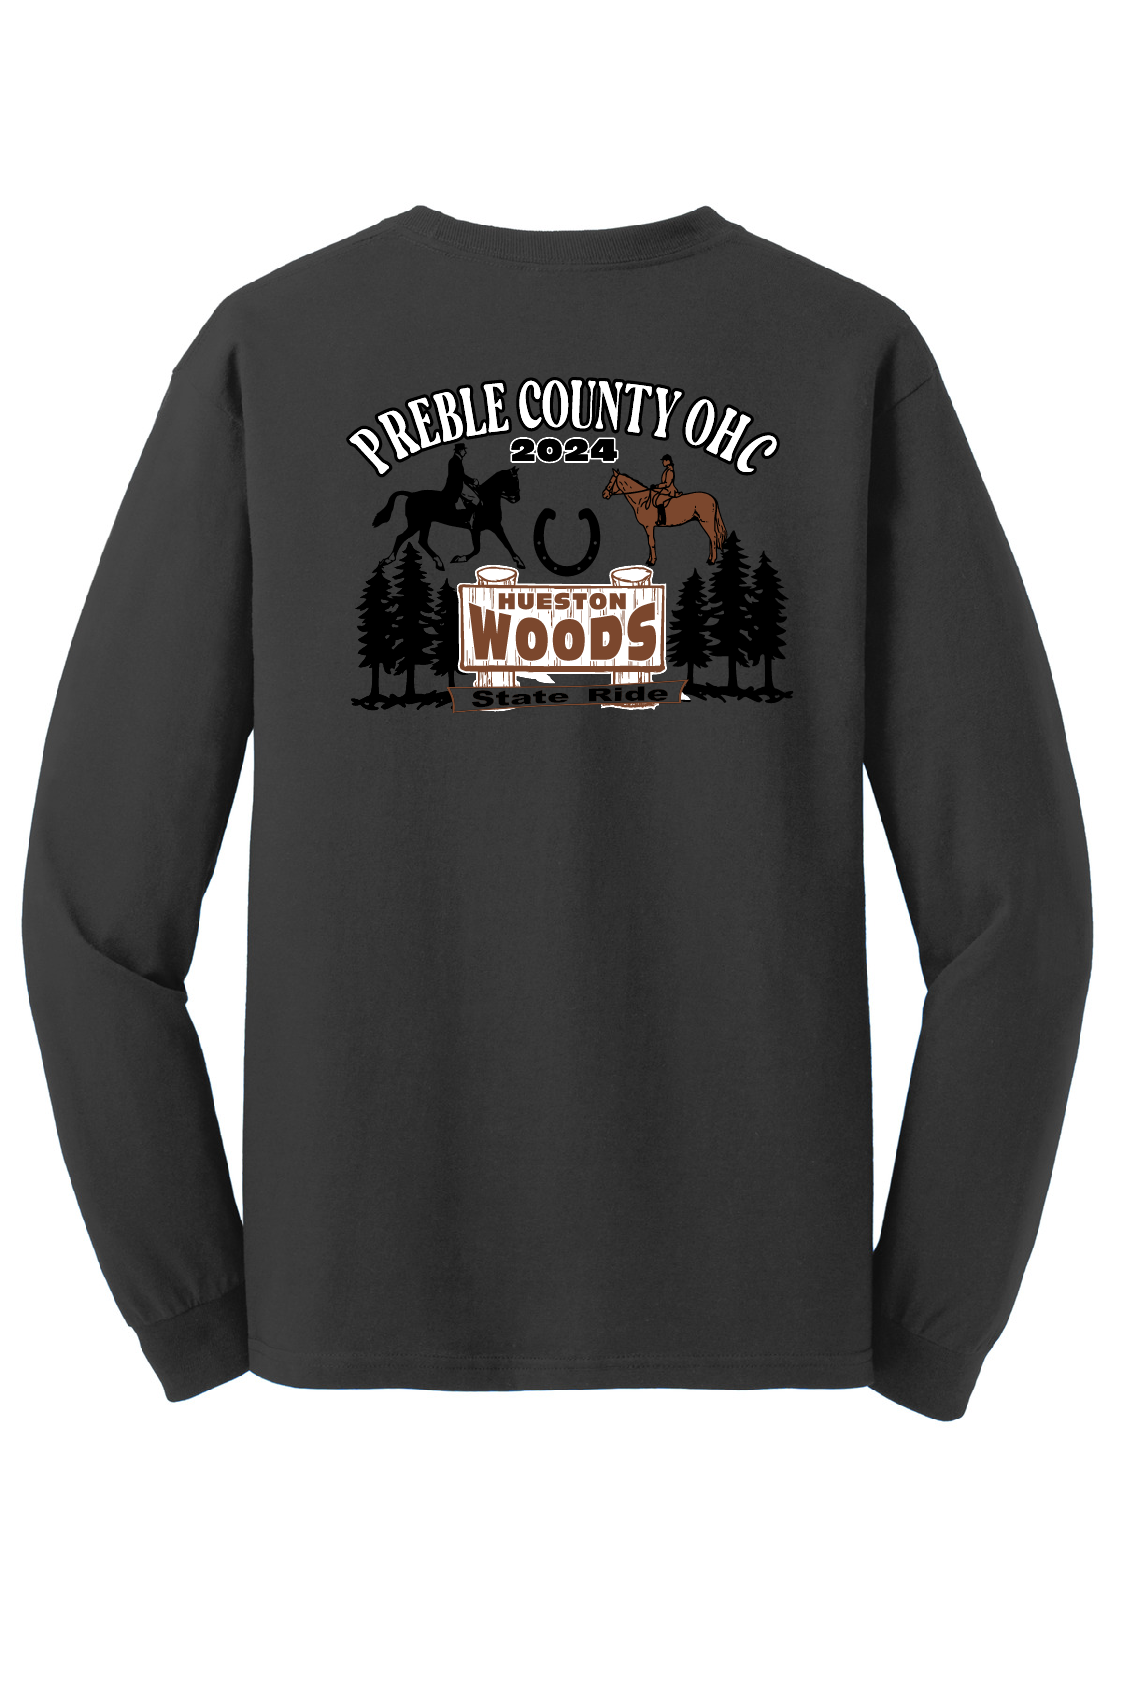 Preble County OHC-Hueston Woods Tshirts